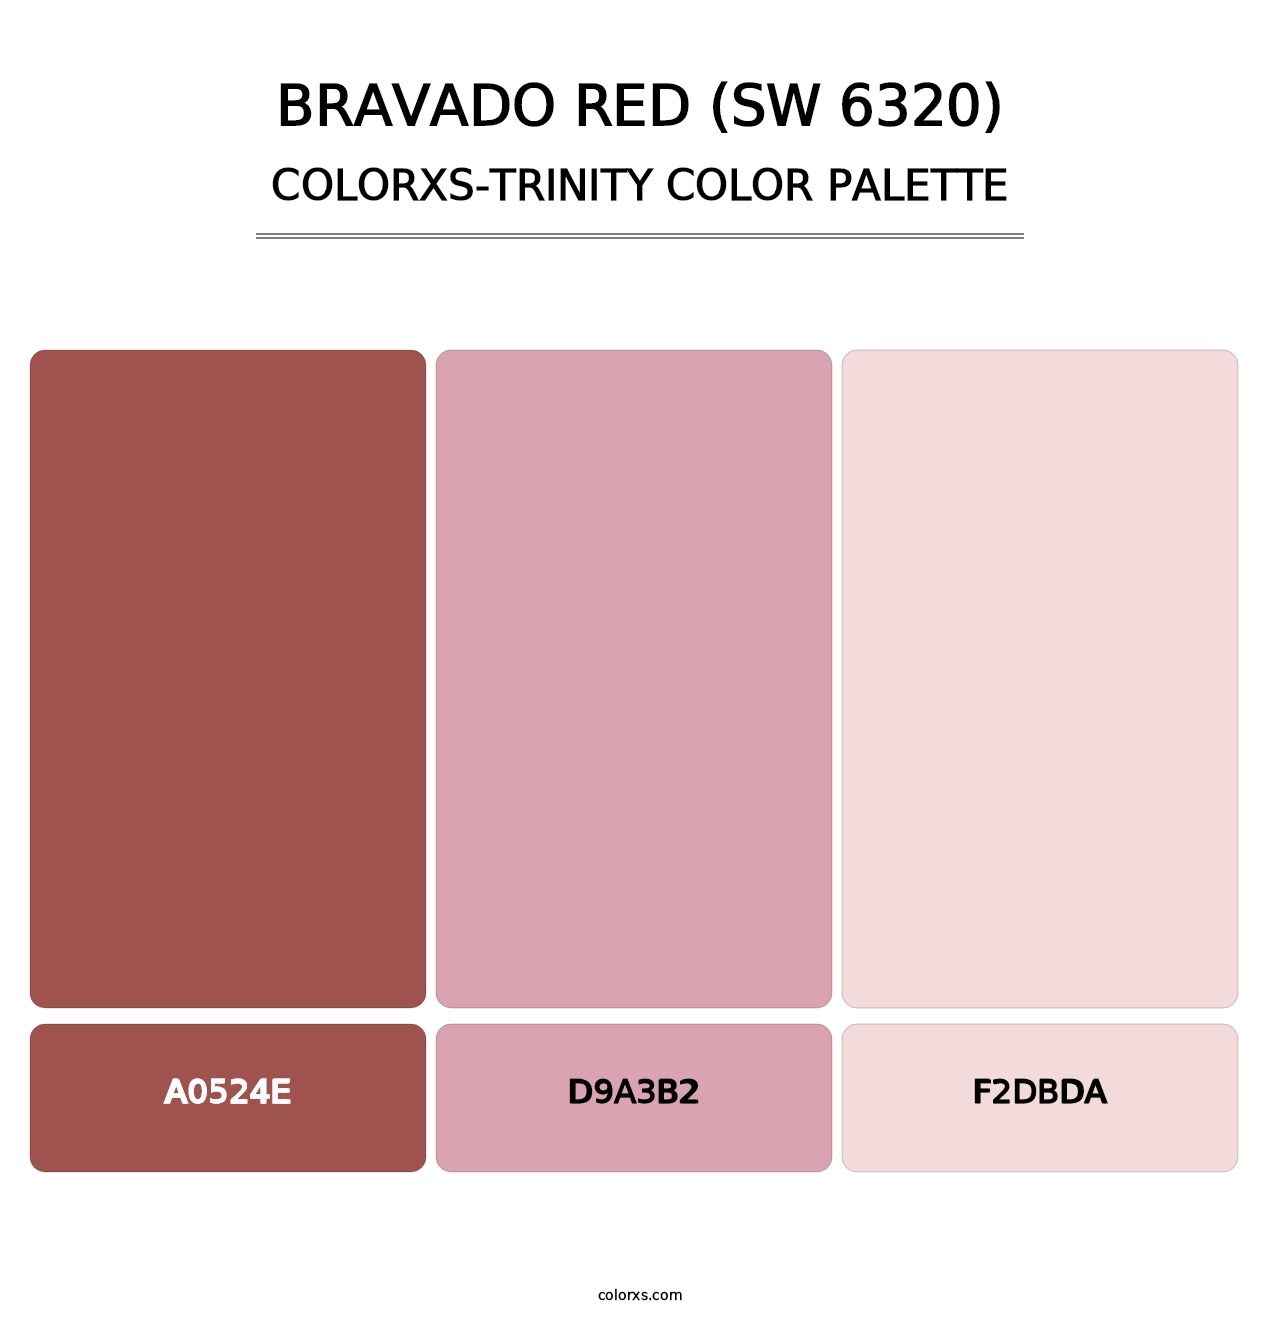 Bravado Red (SW 6320) - Colorxs Trinity Palette